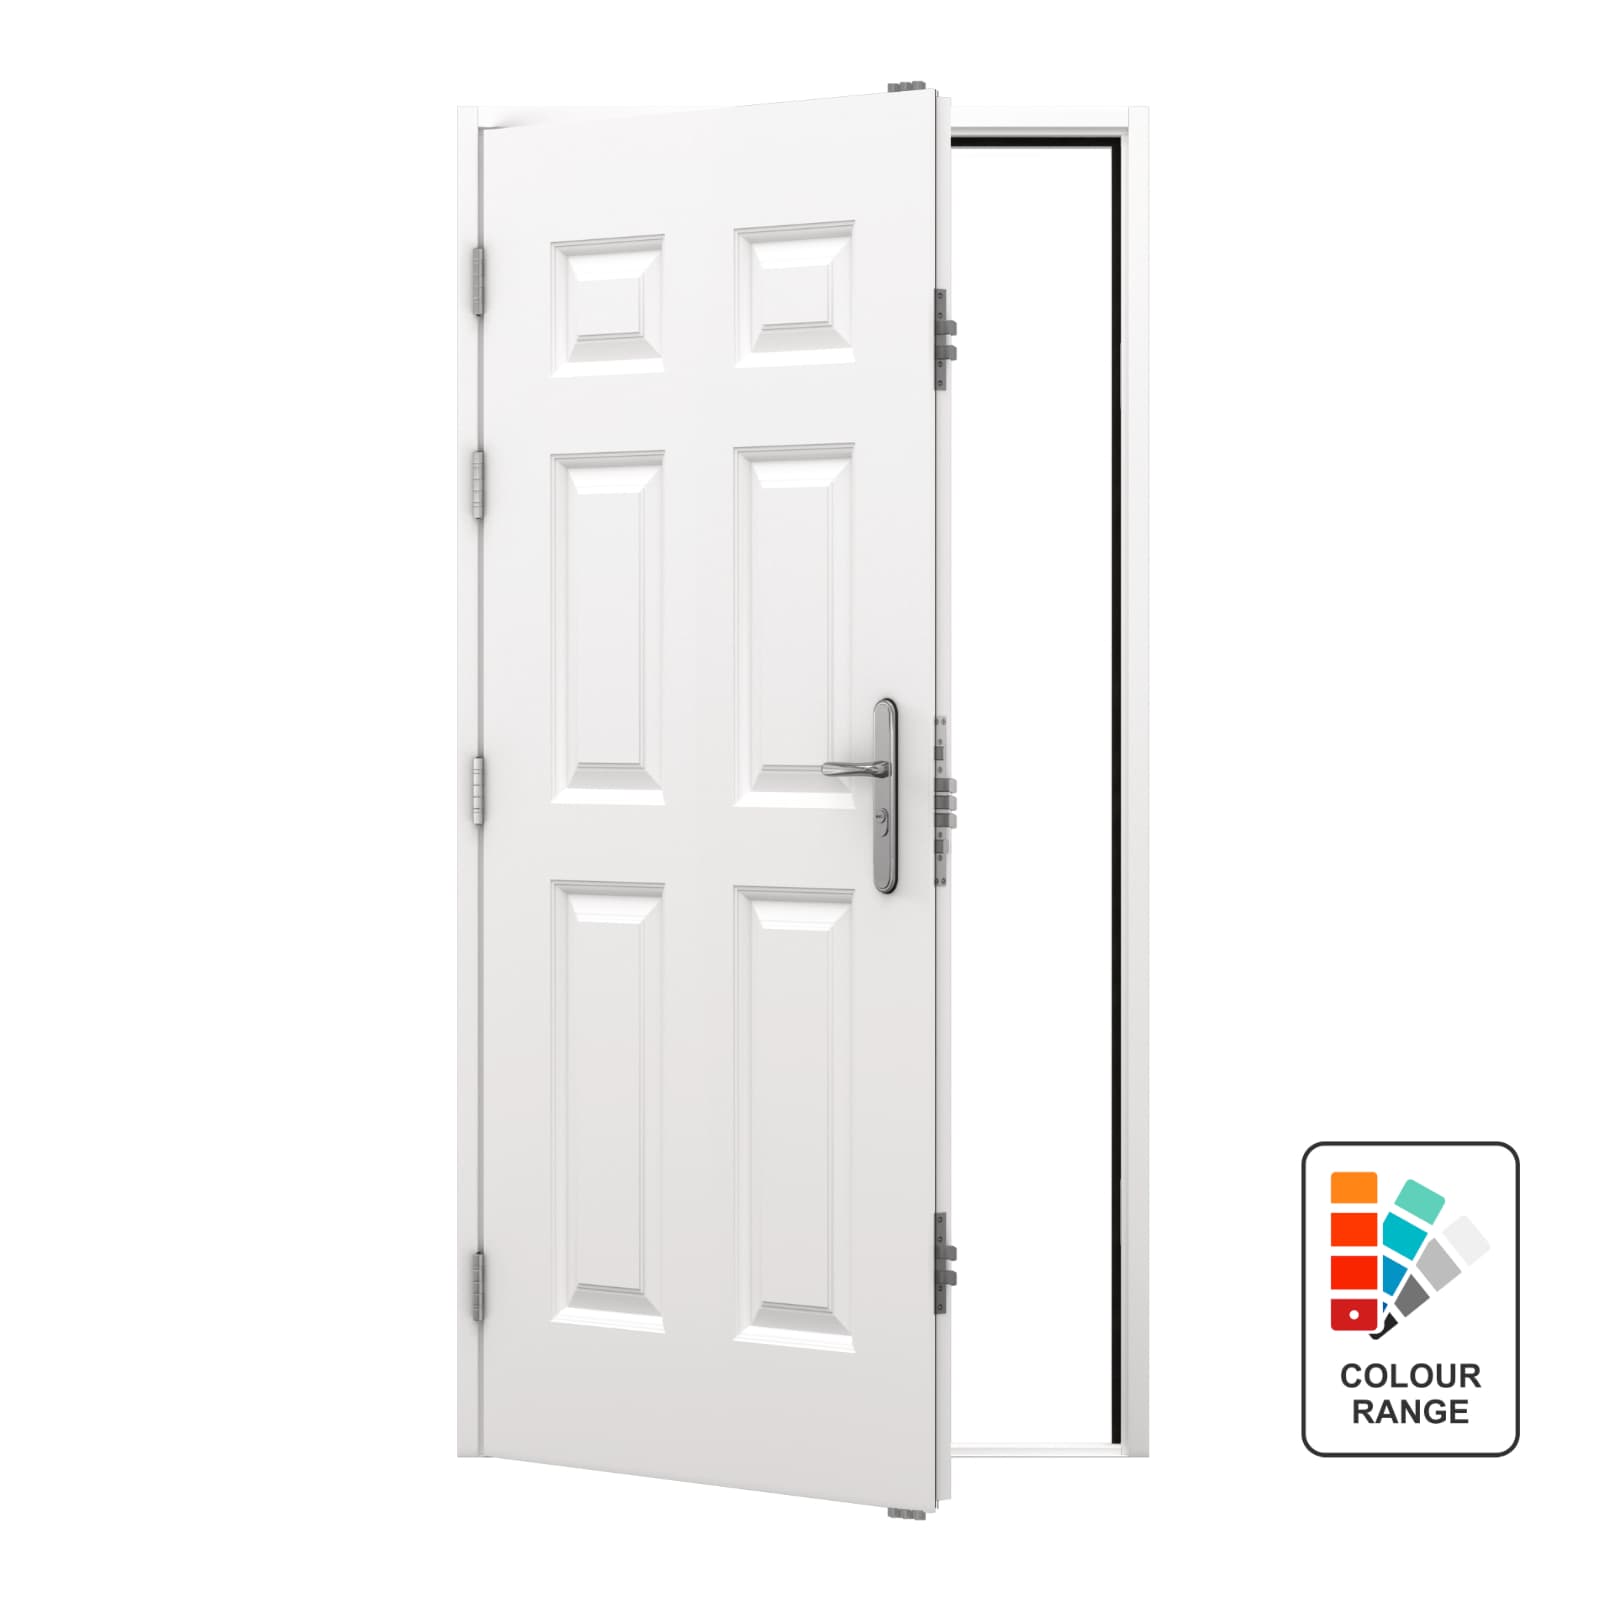 6 Panel Security Steel Door